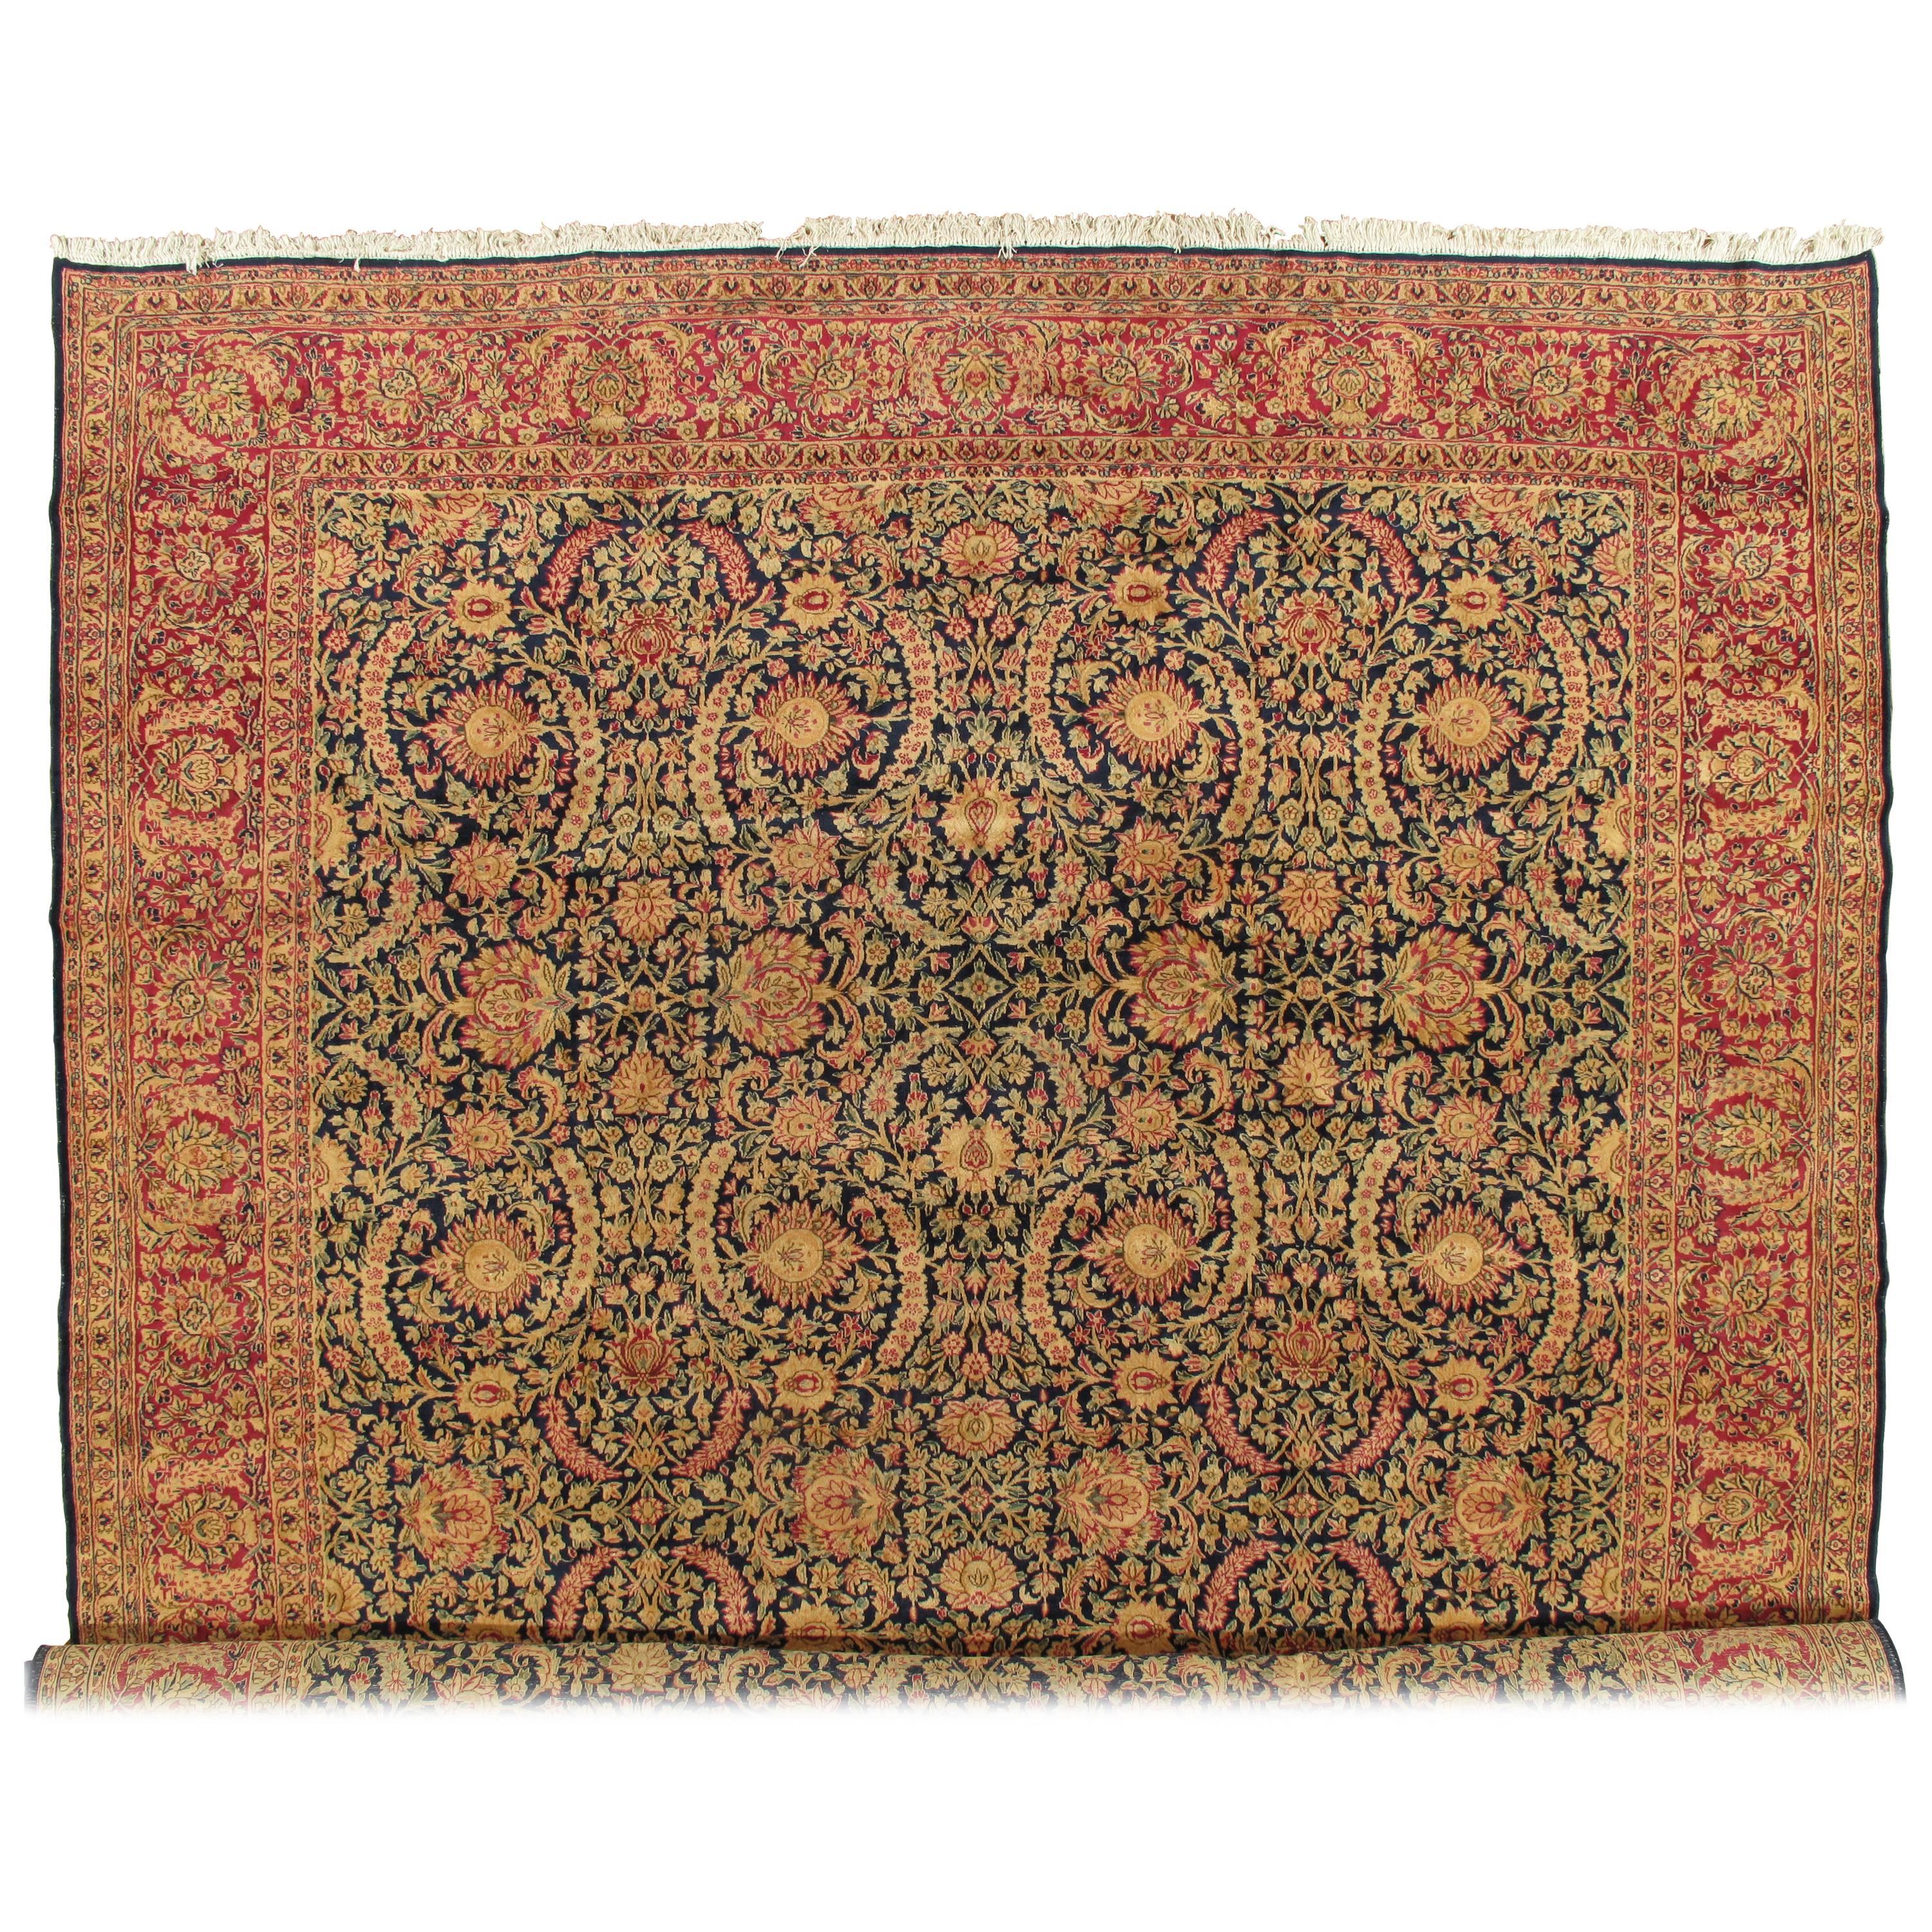 Tapis Kerman ancien, tapis persan artisanal d'Orient, rouge et bleu, sur toute la surface